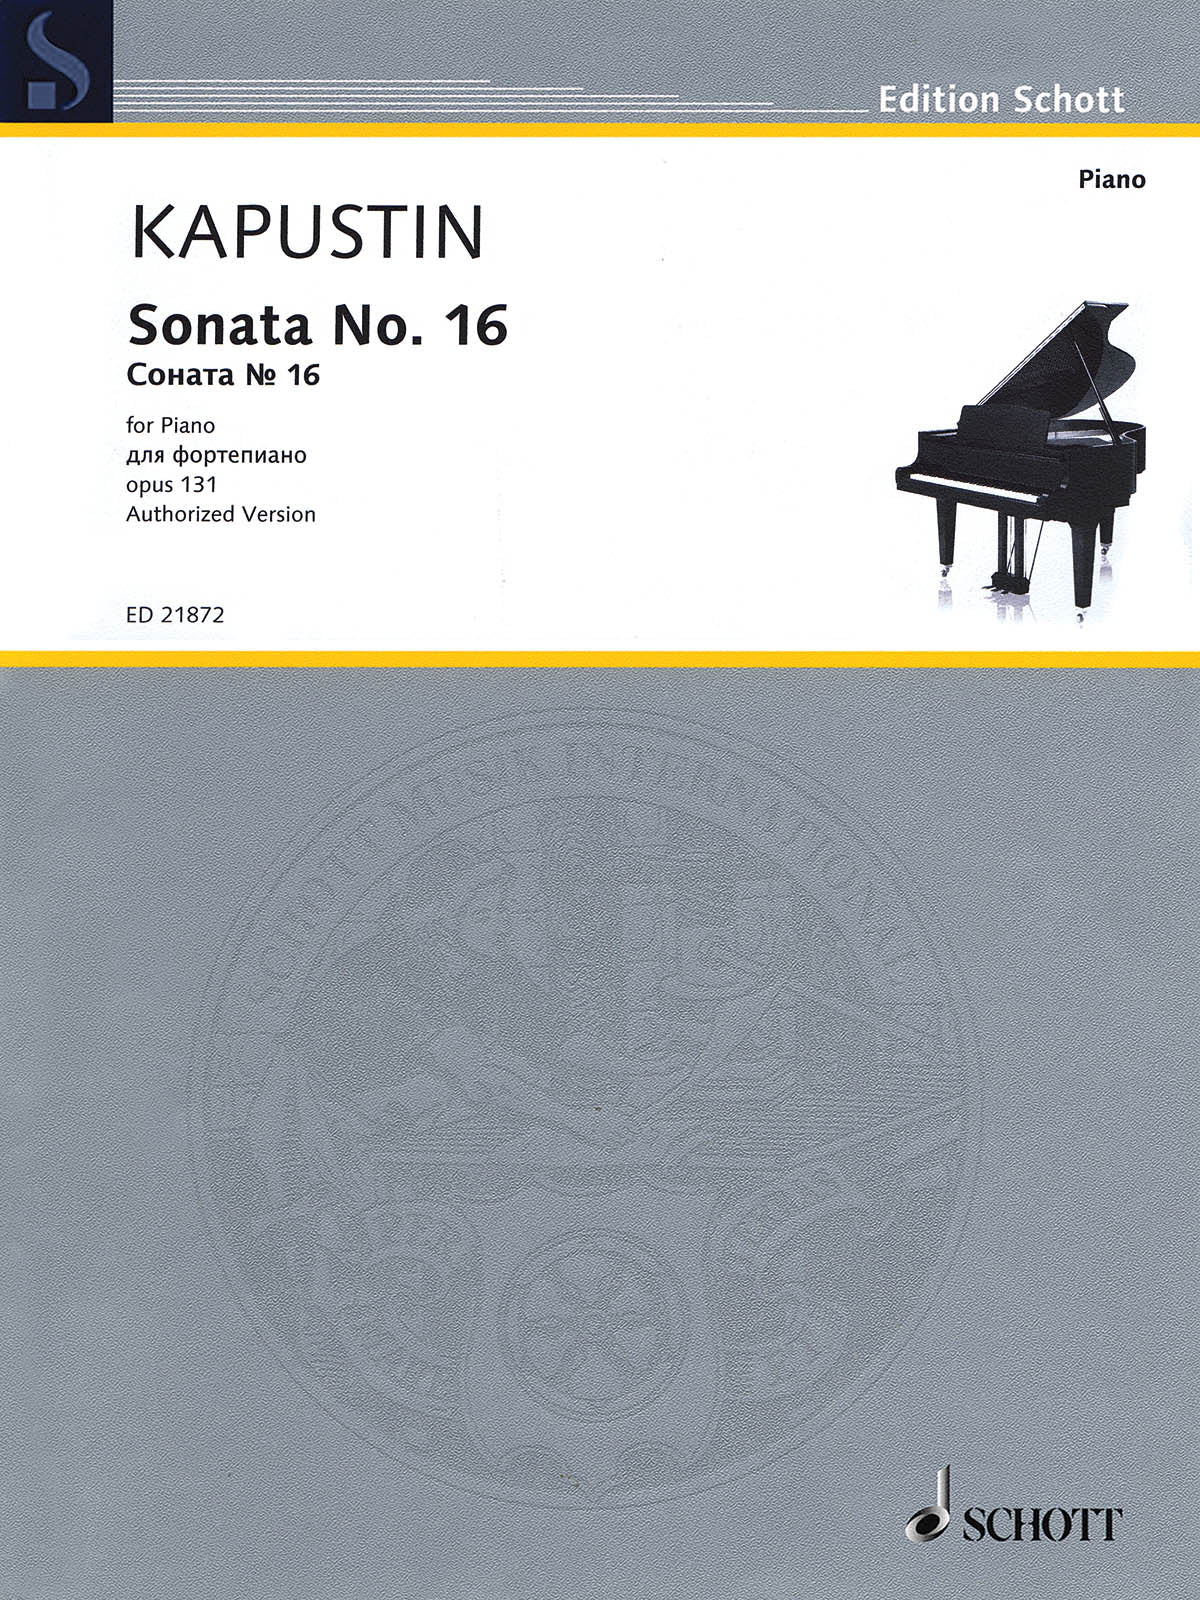 Kapustin: Piano Sonata No. 16, Op. 131